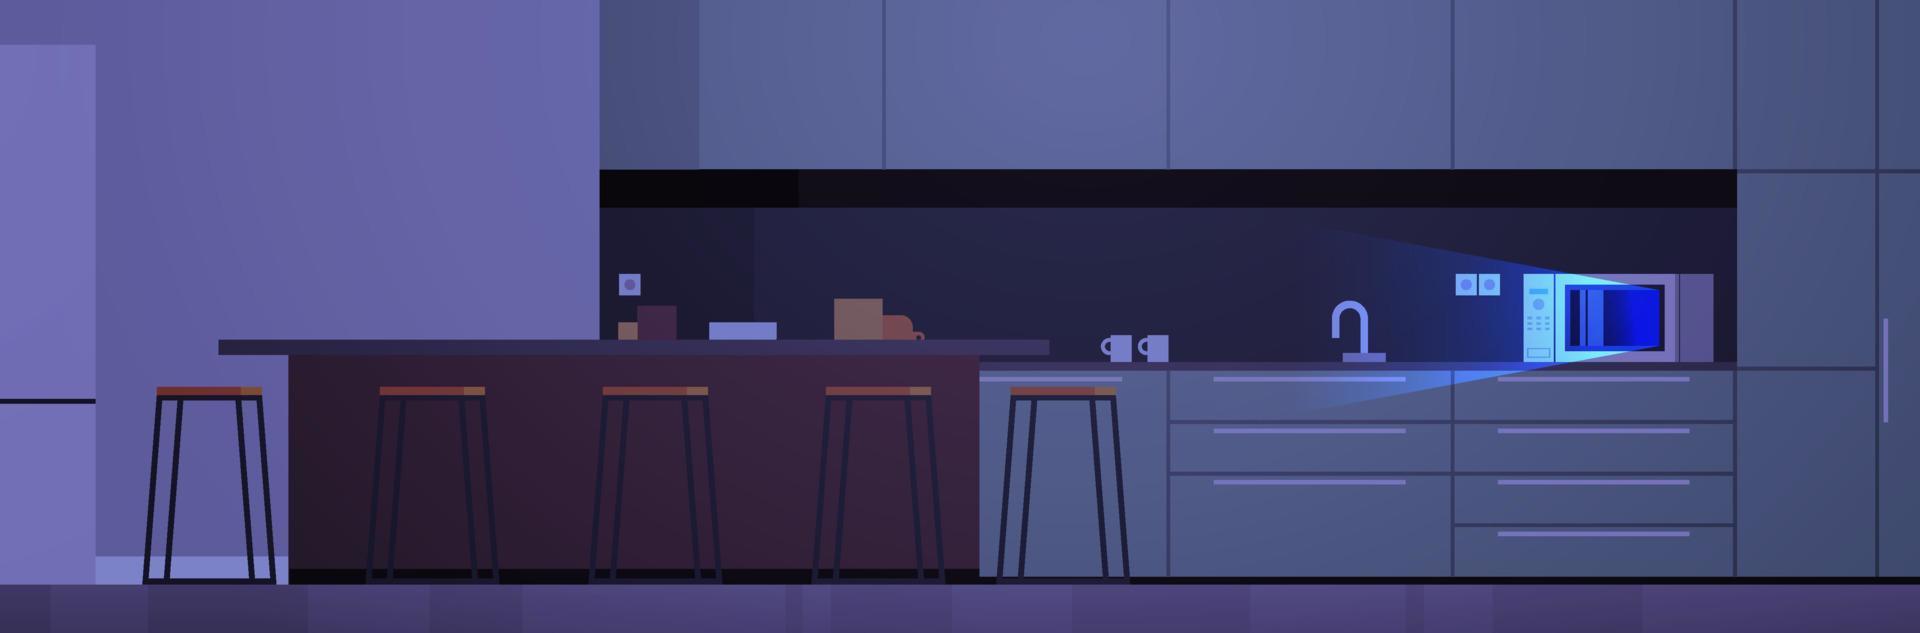 moderne keuken interieur geen mensen en huishoudelijke apparaten donkere nacht concept platte ontwerp illustratie. vector